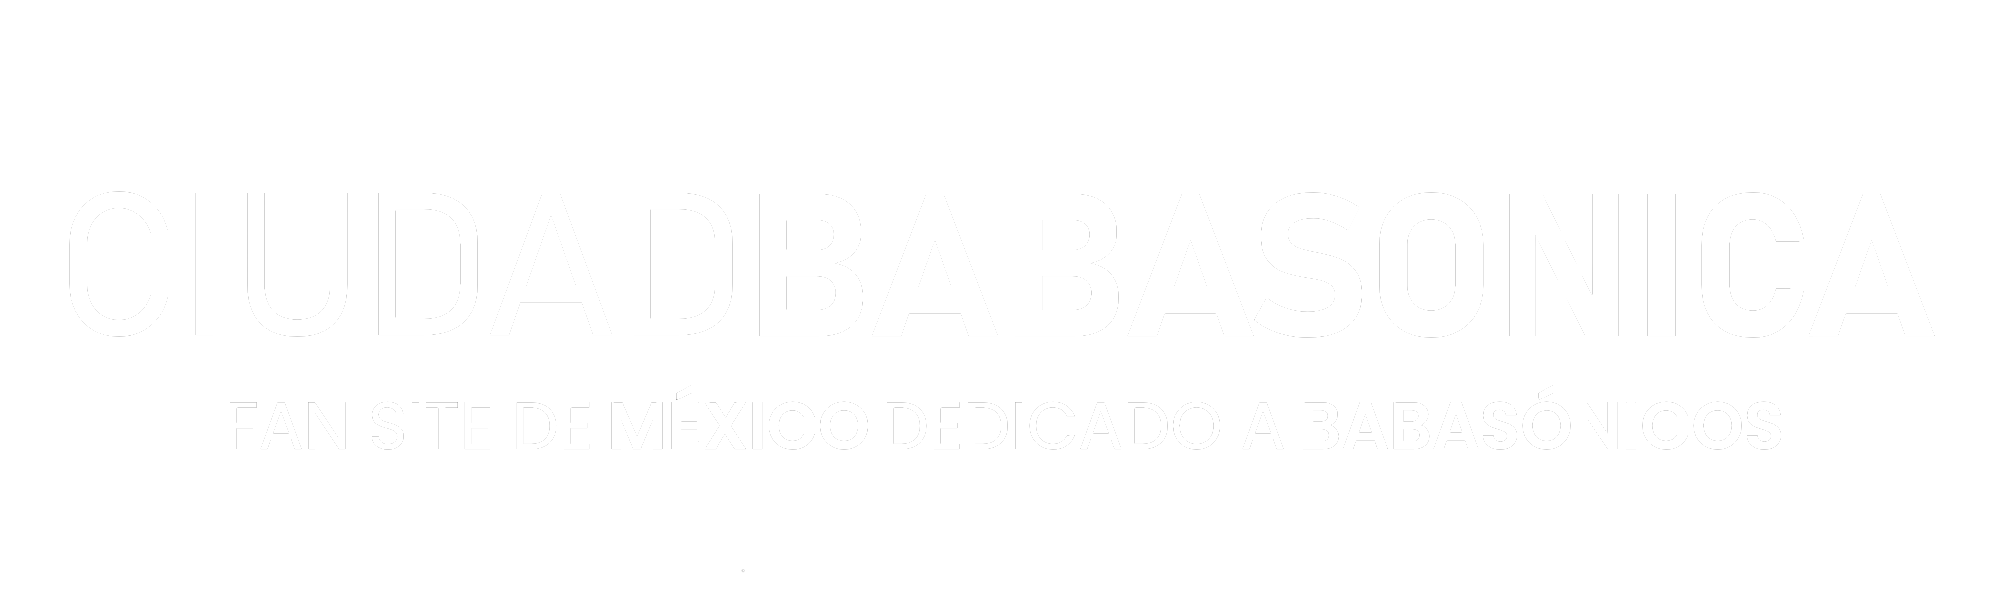 Fansite de México dedicado a Babasónicos